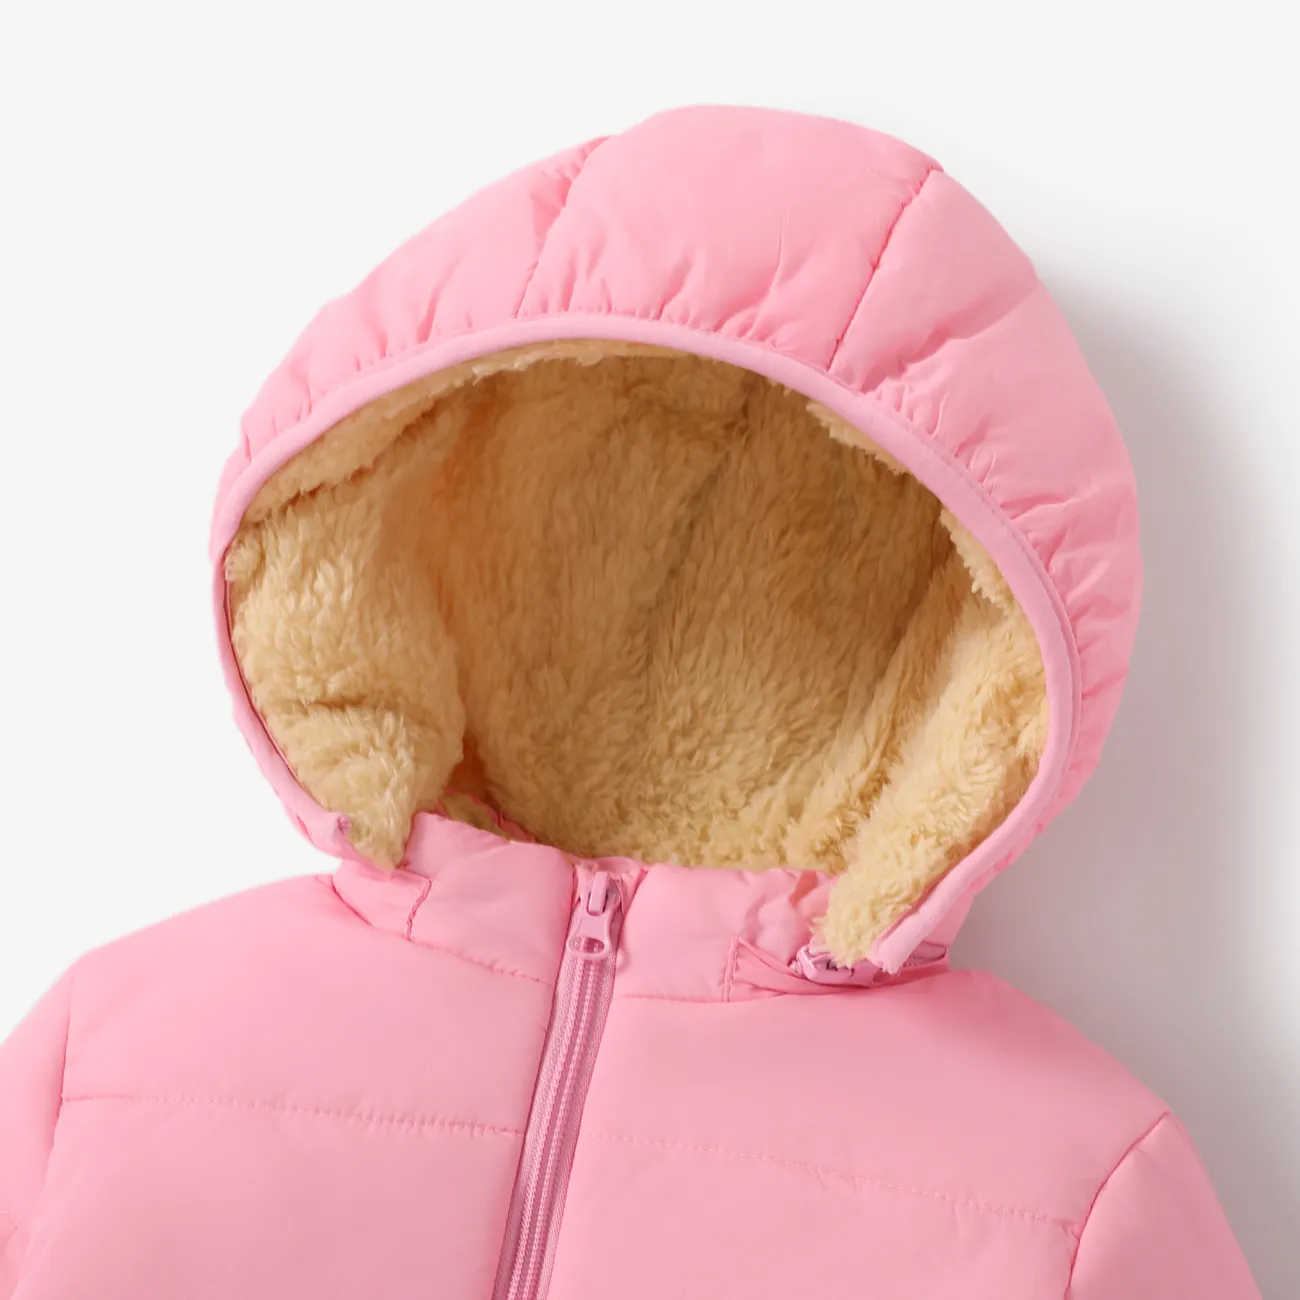 abrigo con capucha de manga larga sólido causal fluff para bebé / niño pequeño Rosado big image 1